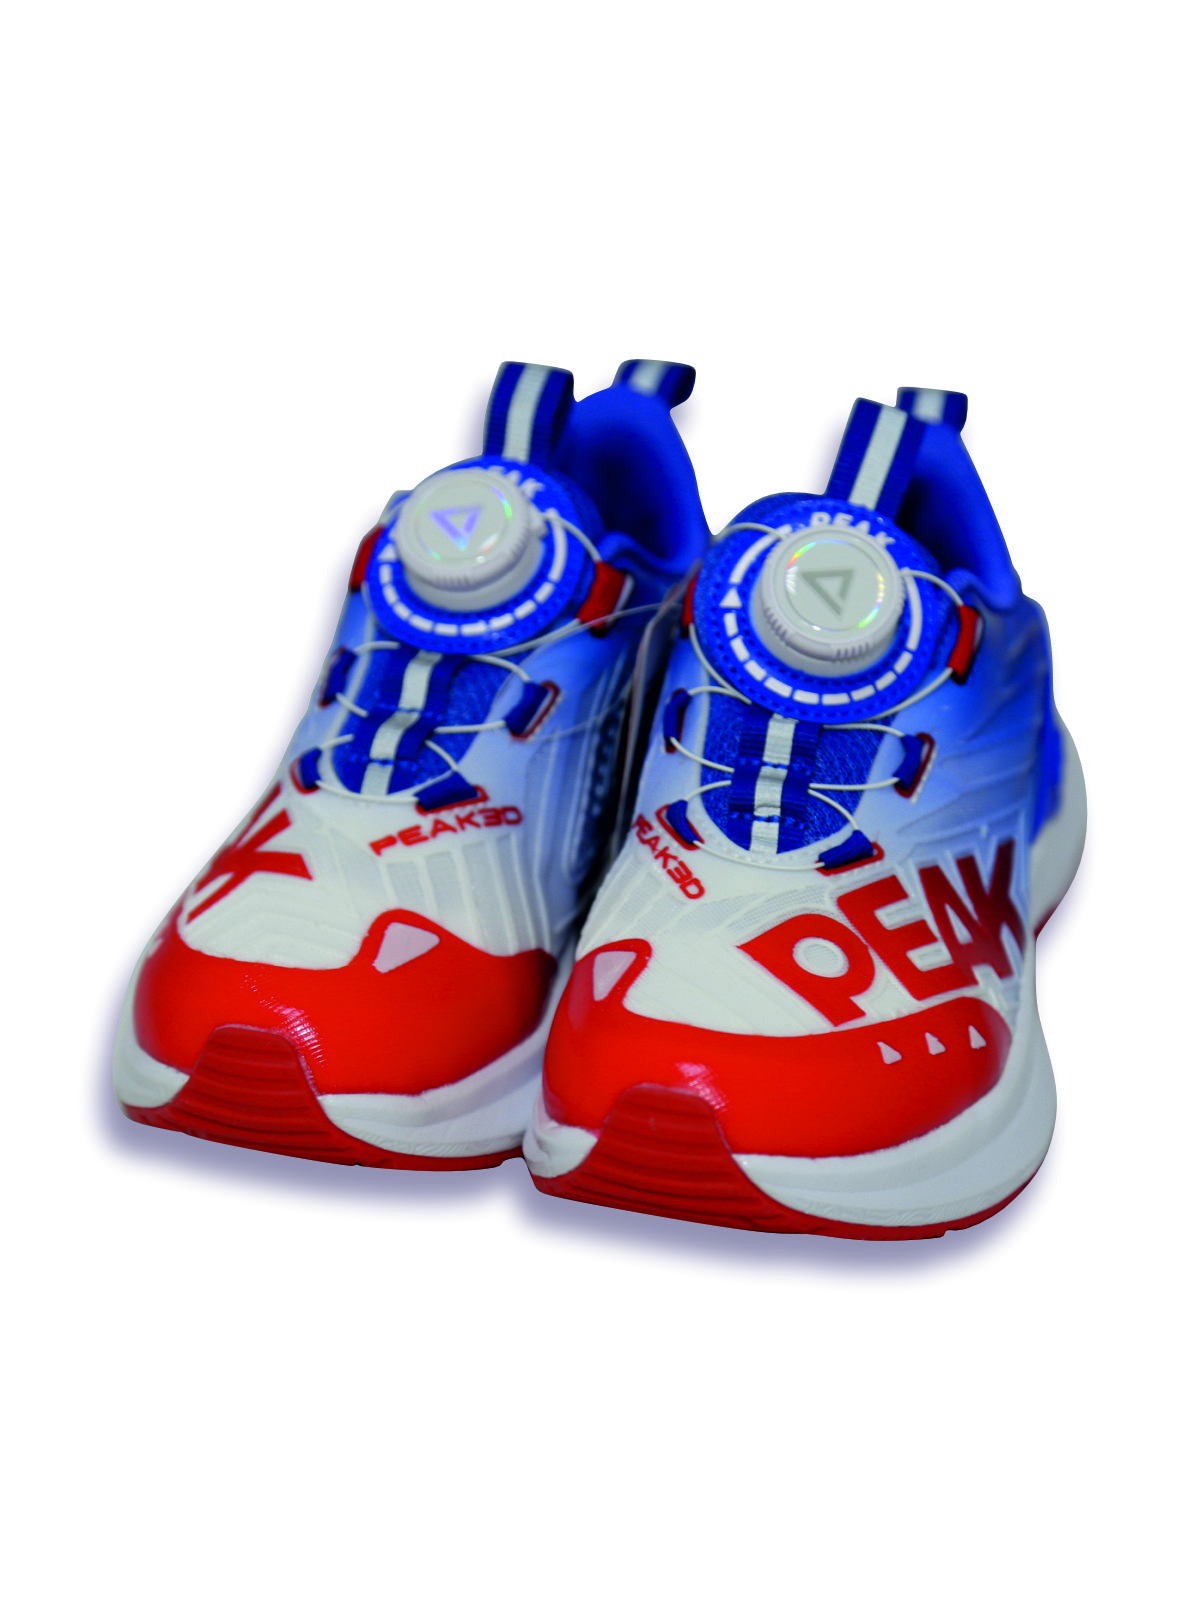 Кроссовки детские PEAK E23, красно-сине-белый, 36 кроссовки детские peak e23 красно сине белый 38